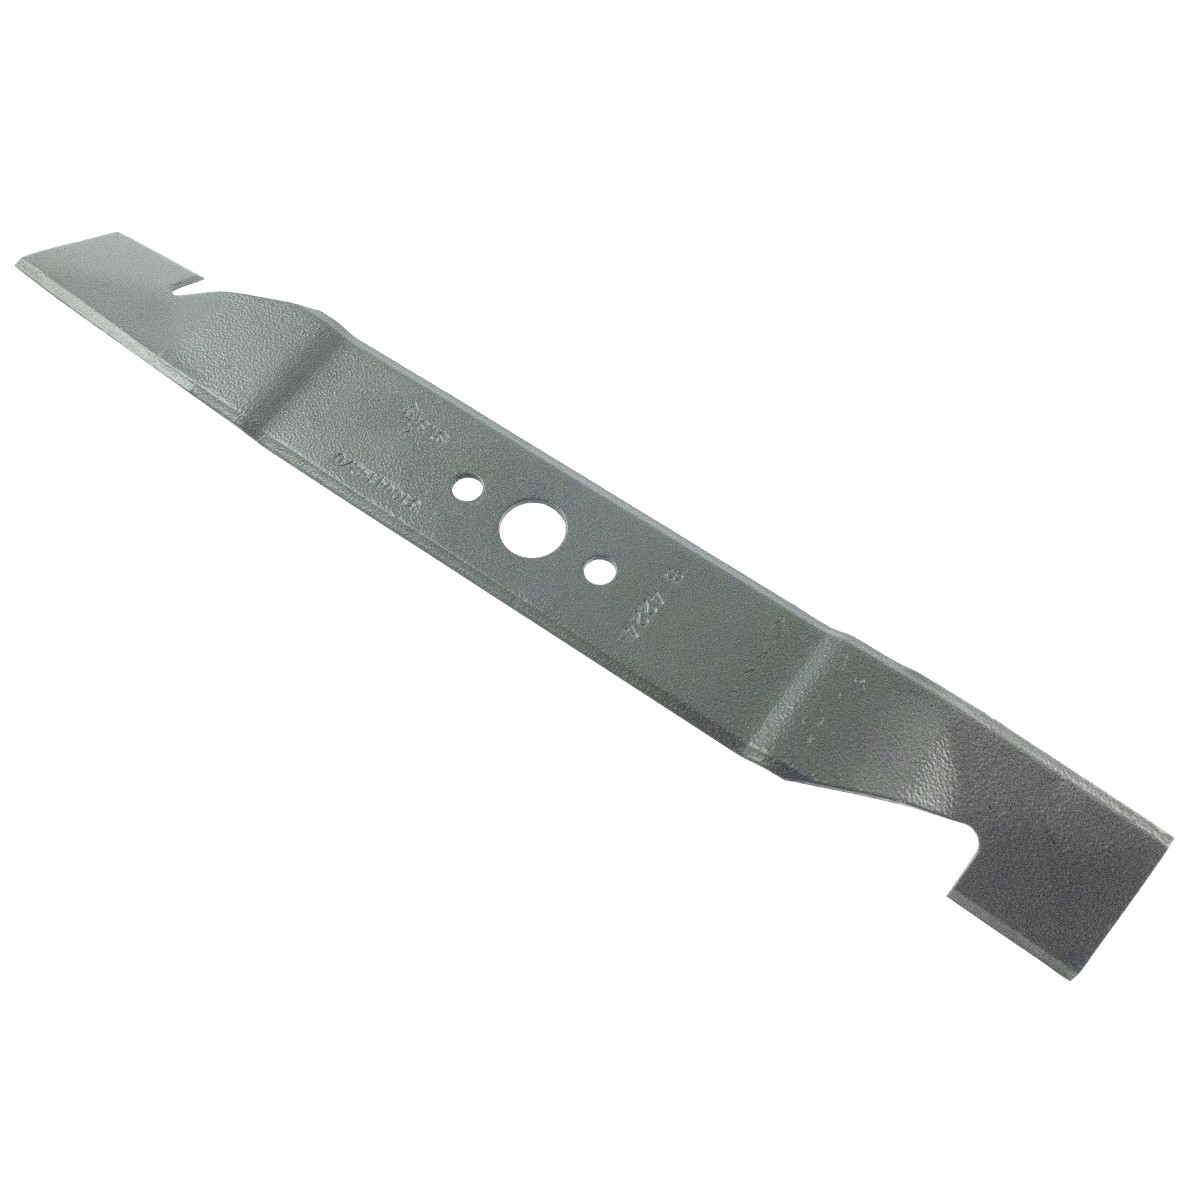 Žací nůž Stiga 362 mm, Turbo EL, Collector 39 EL, 81004142/0